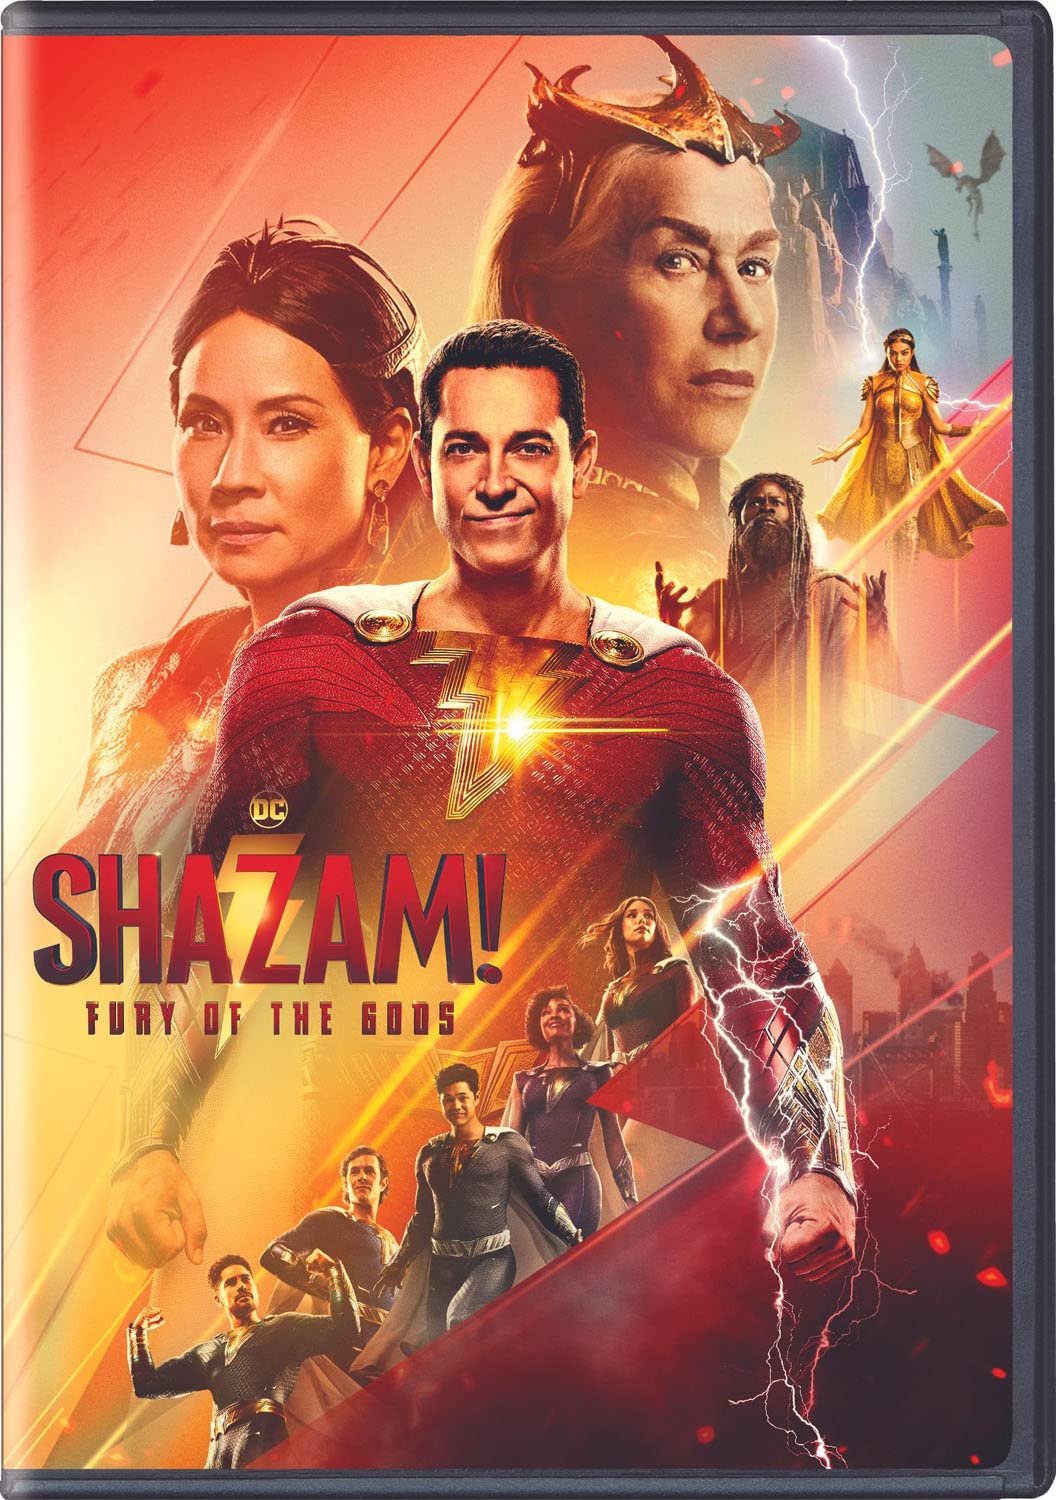 Image for "Shazam!. Fury of the gods"